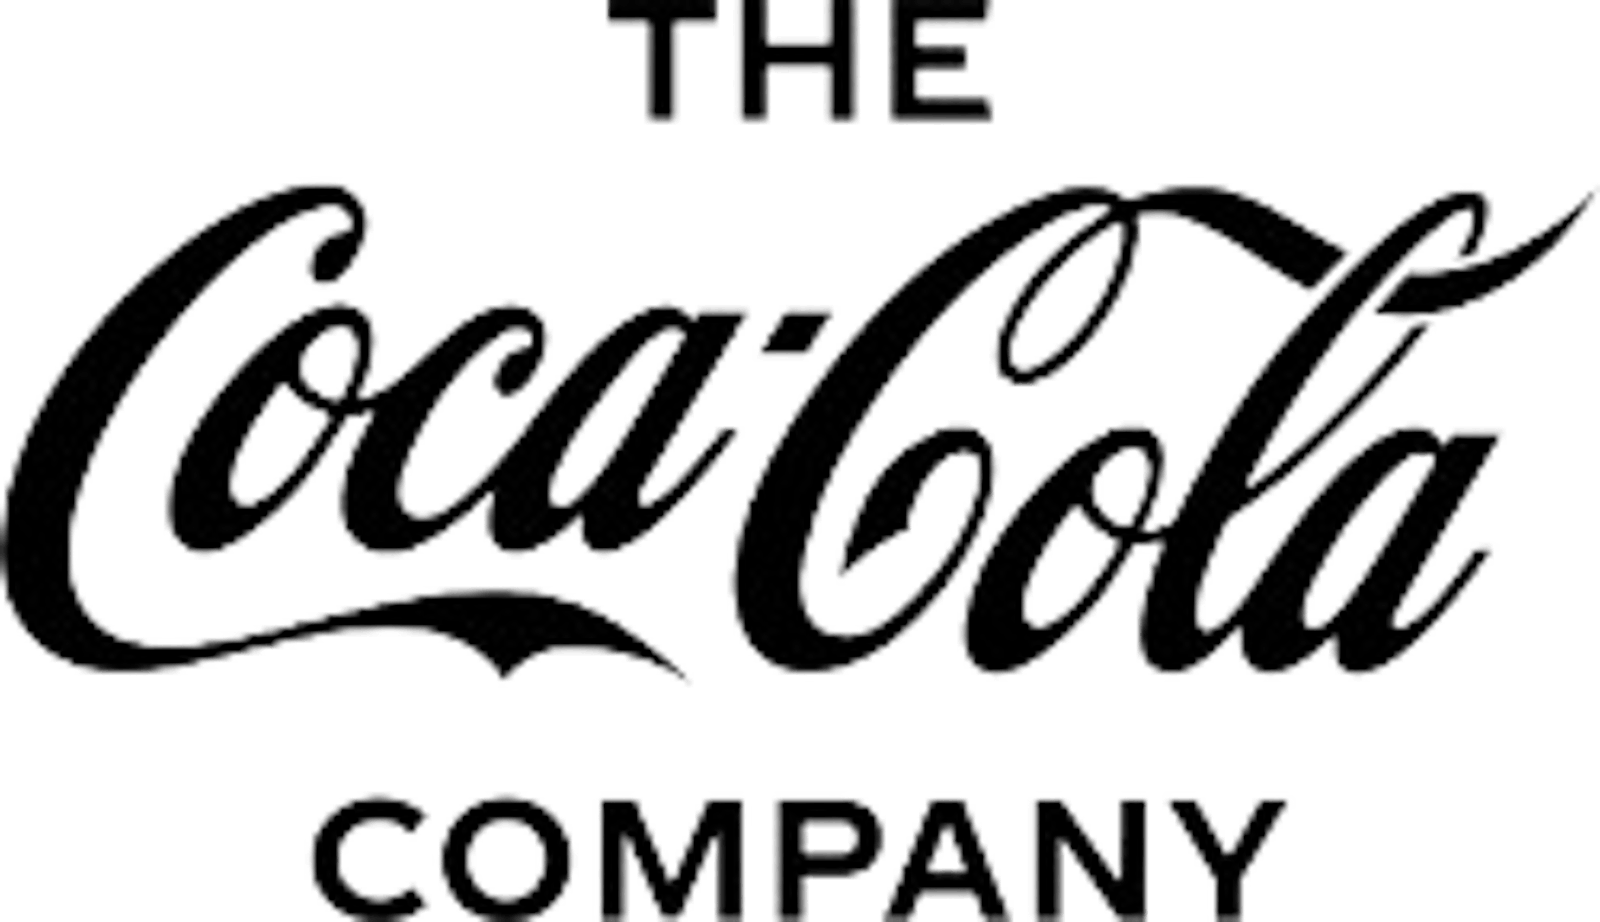 The Coca-Cola Company logo in black